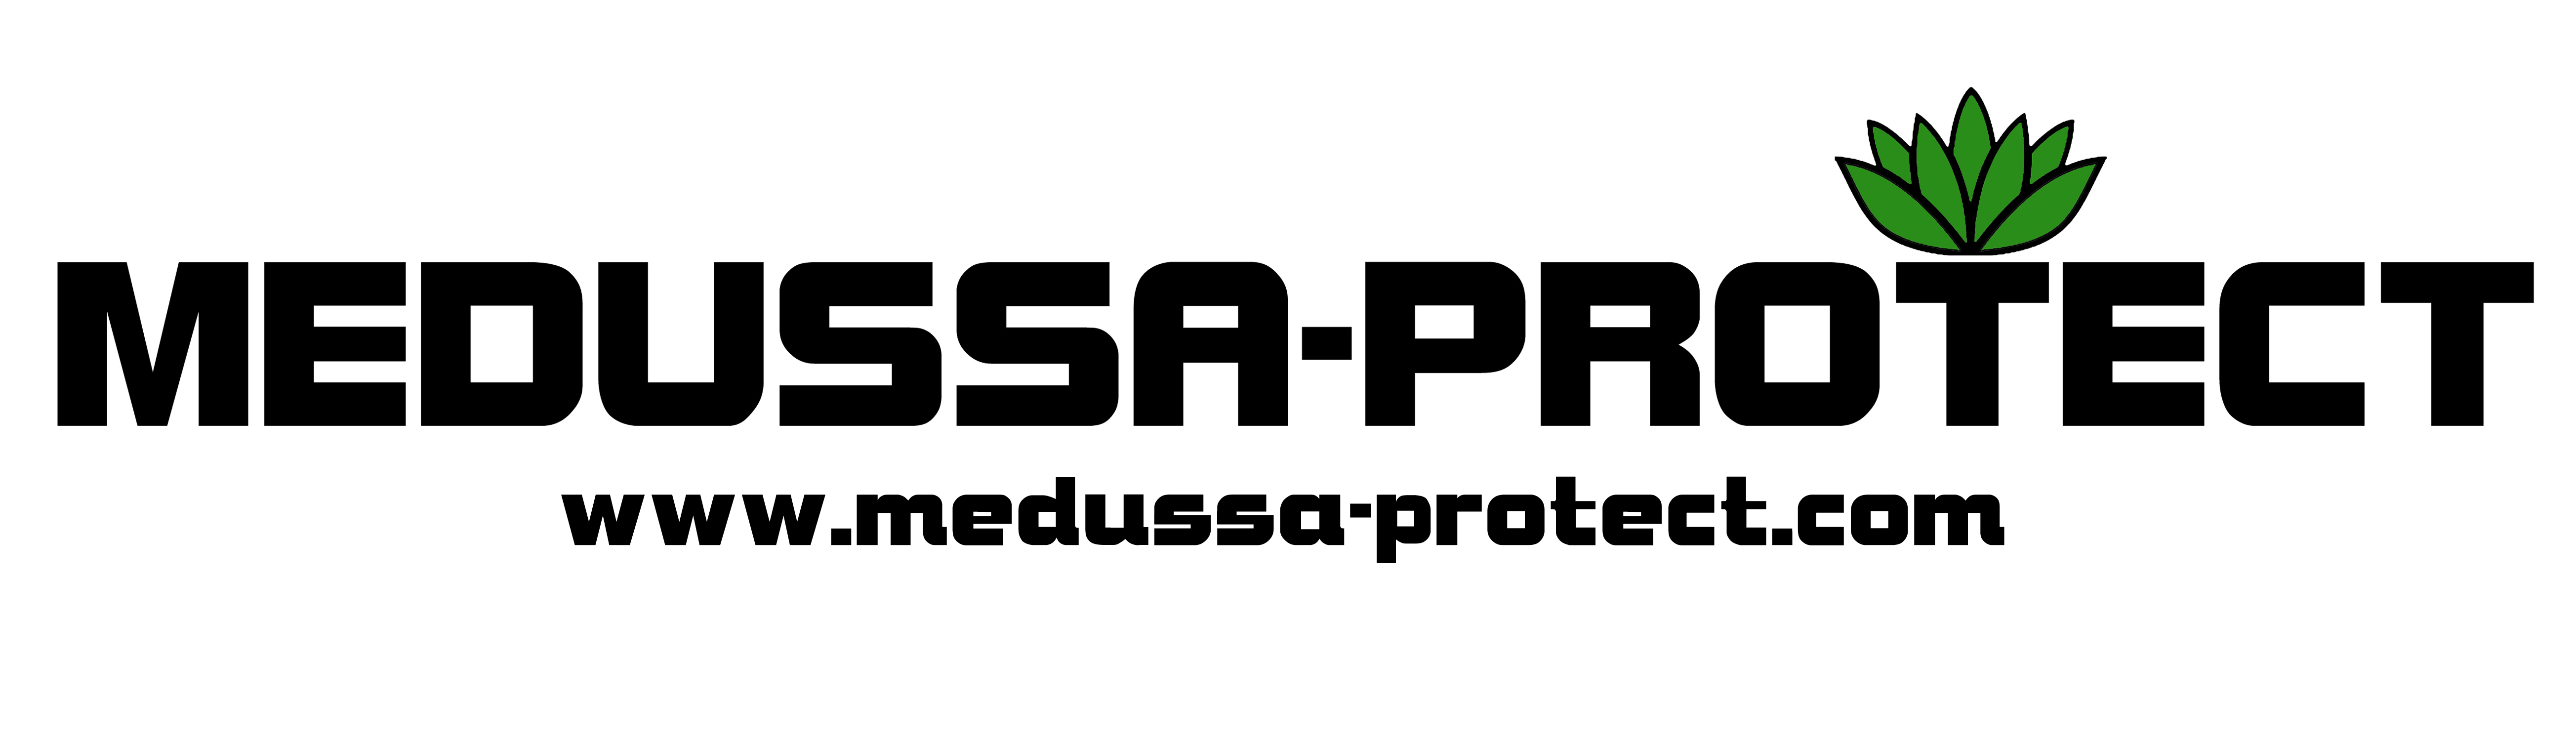 Medussa-Protect